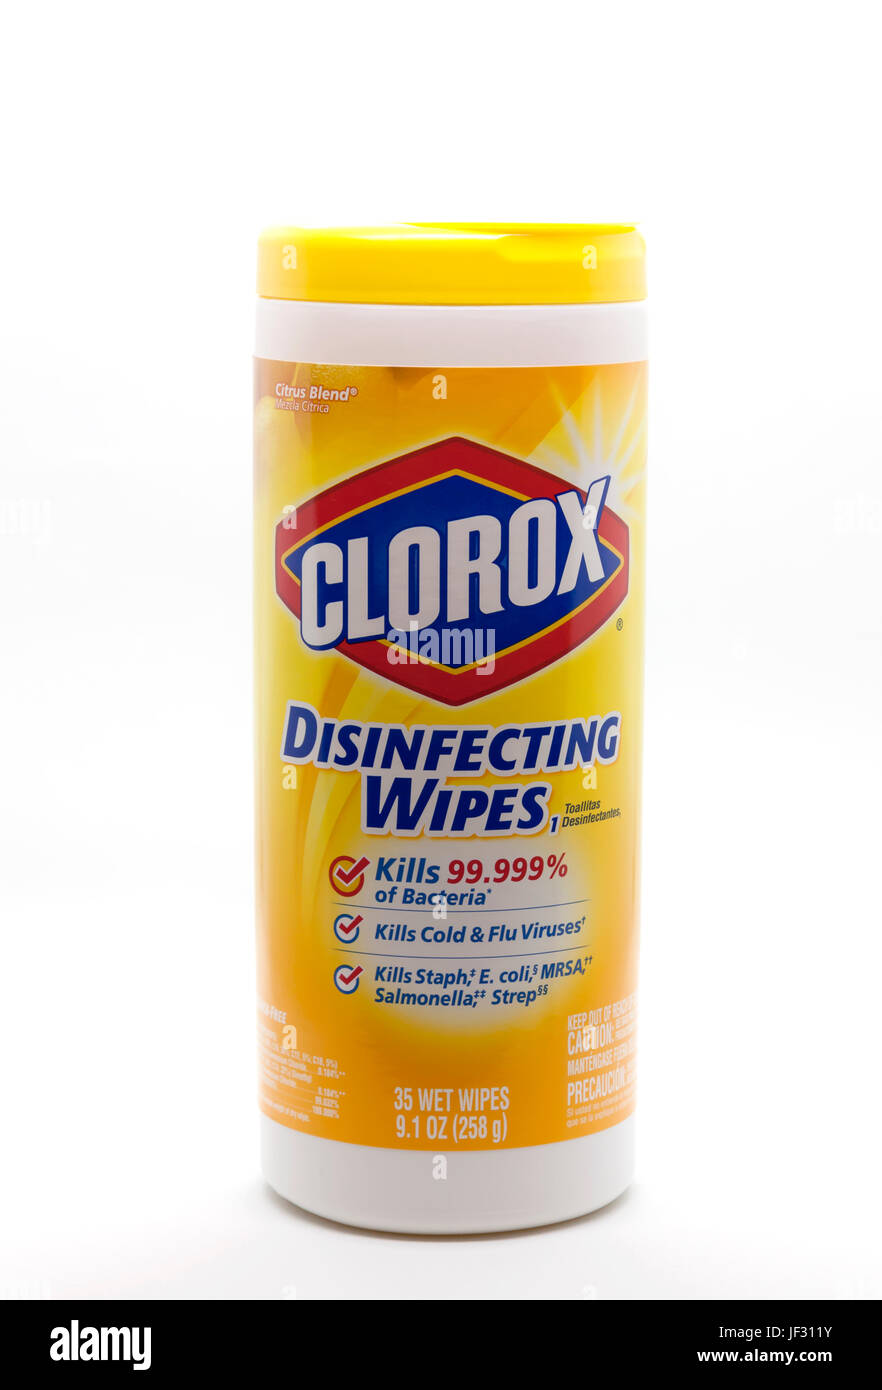 Lingettes désinfectantes Clorox dans un récipient qui nettoie, désinfecte et tue les germes et bactéries. Banque D'Images